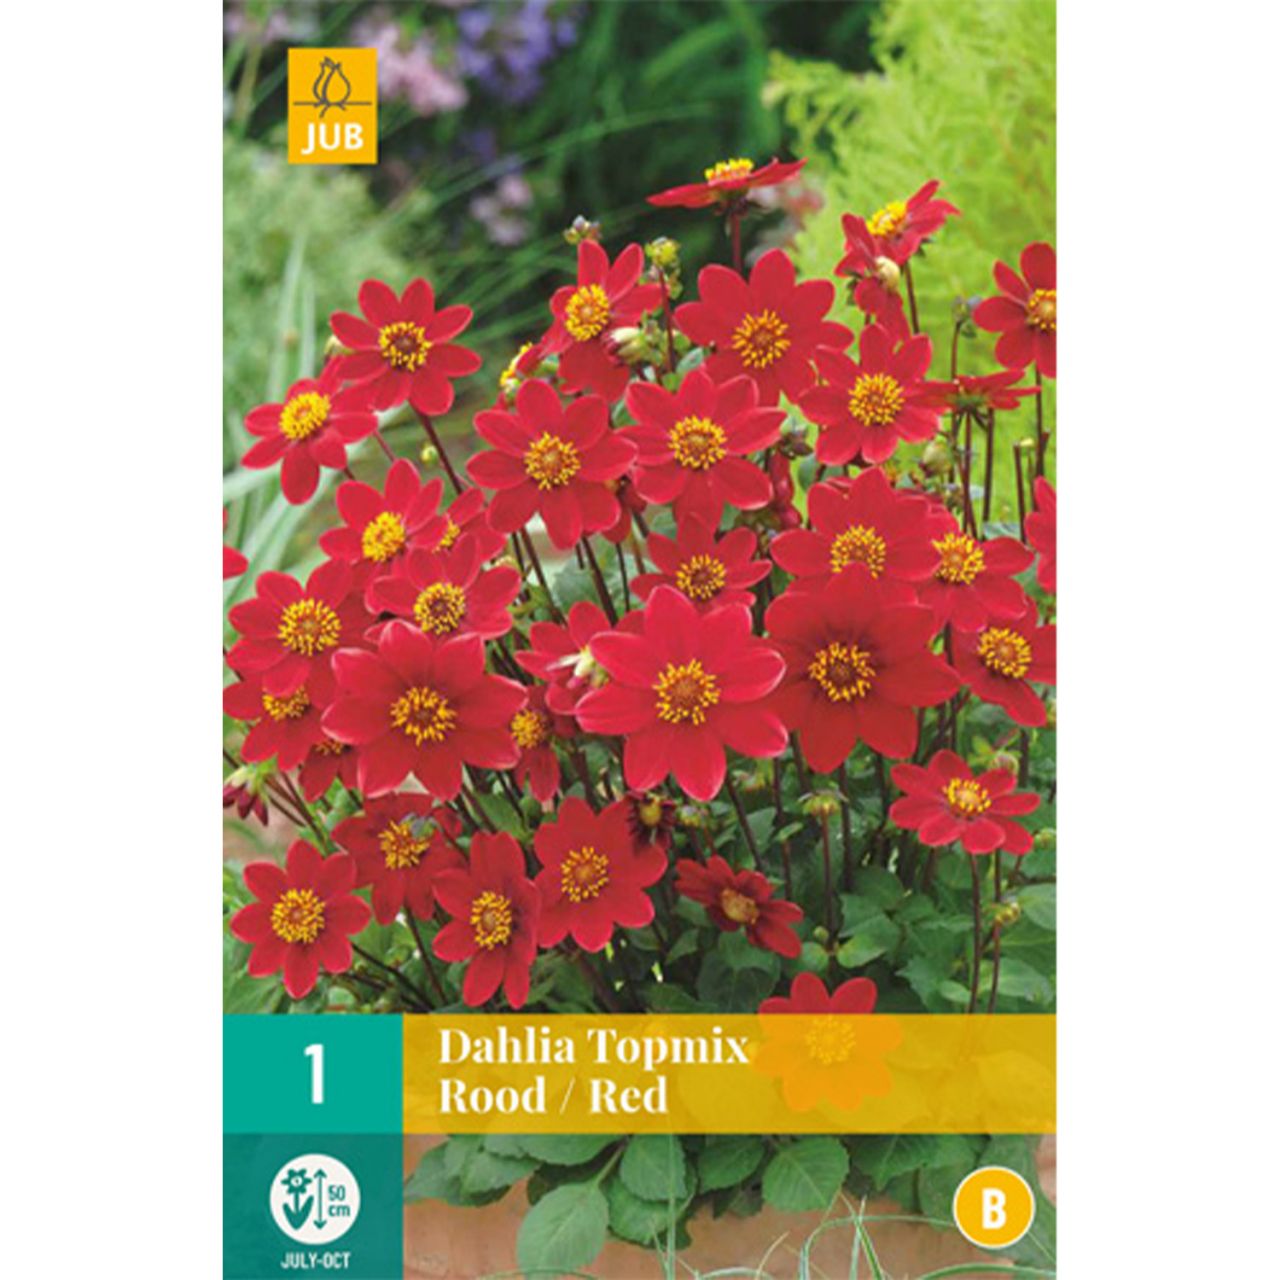 Kategorie <b>Frühlings-Blumenzwiebeln </b> - Dahlie Topmix in rot - Dahlia